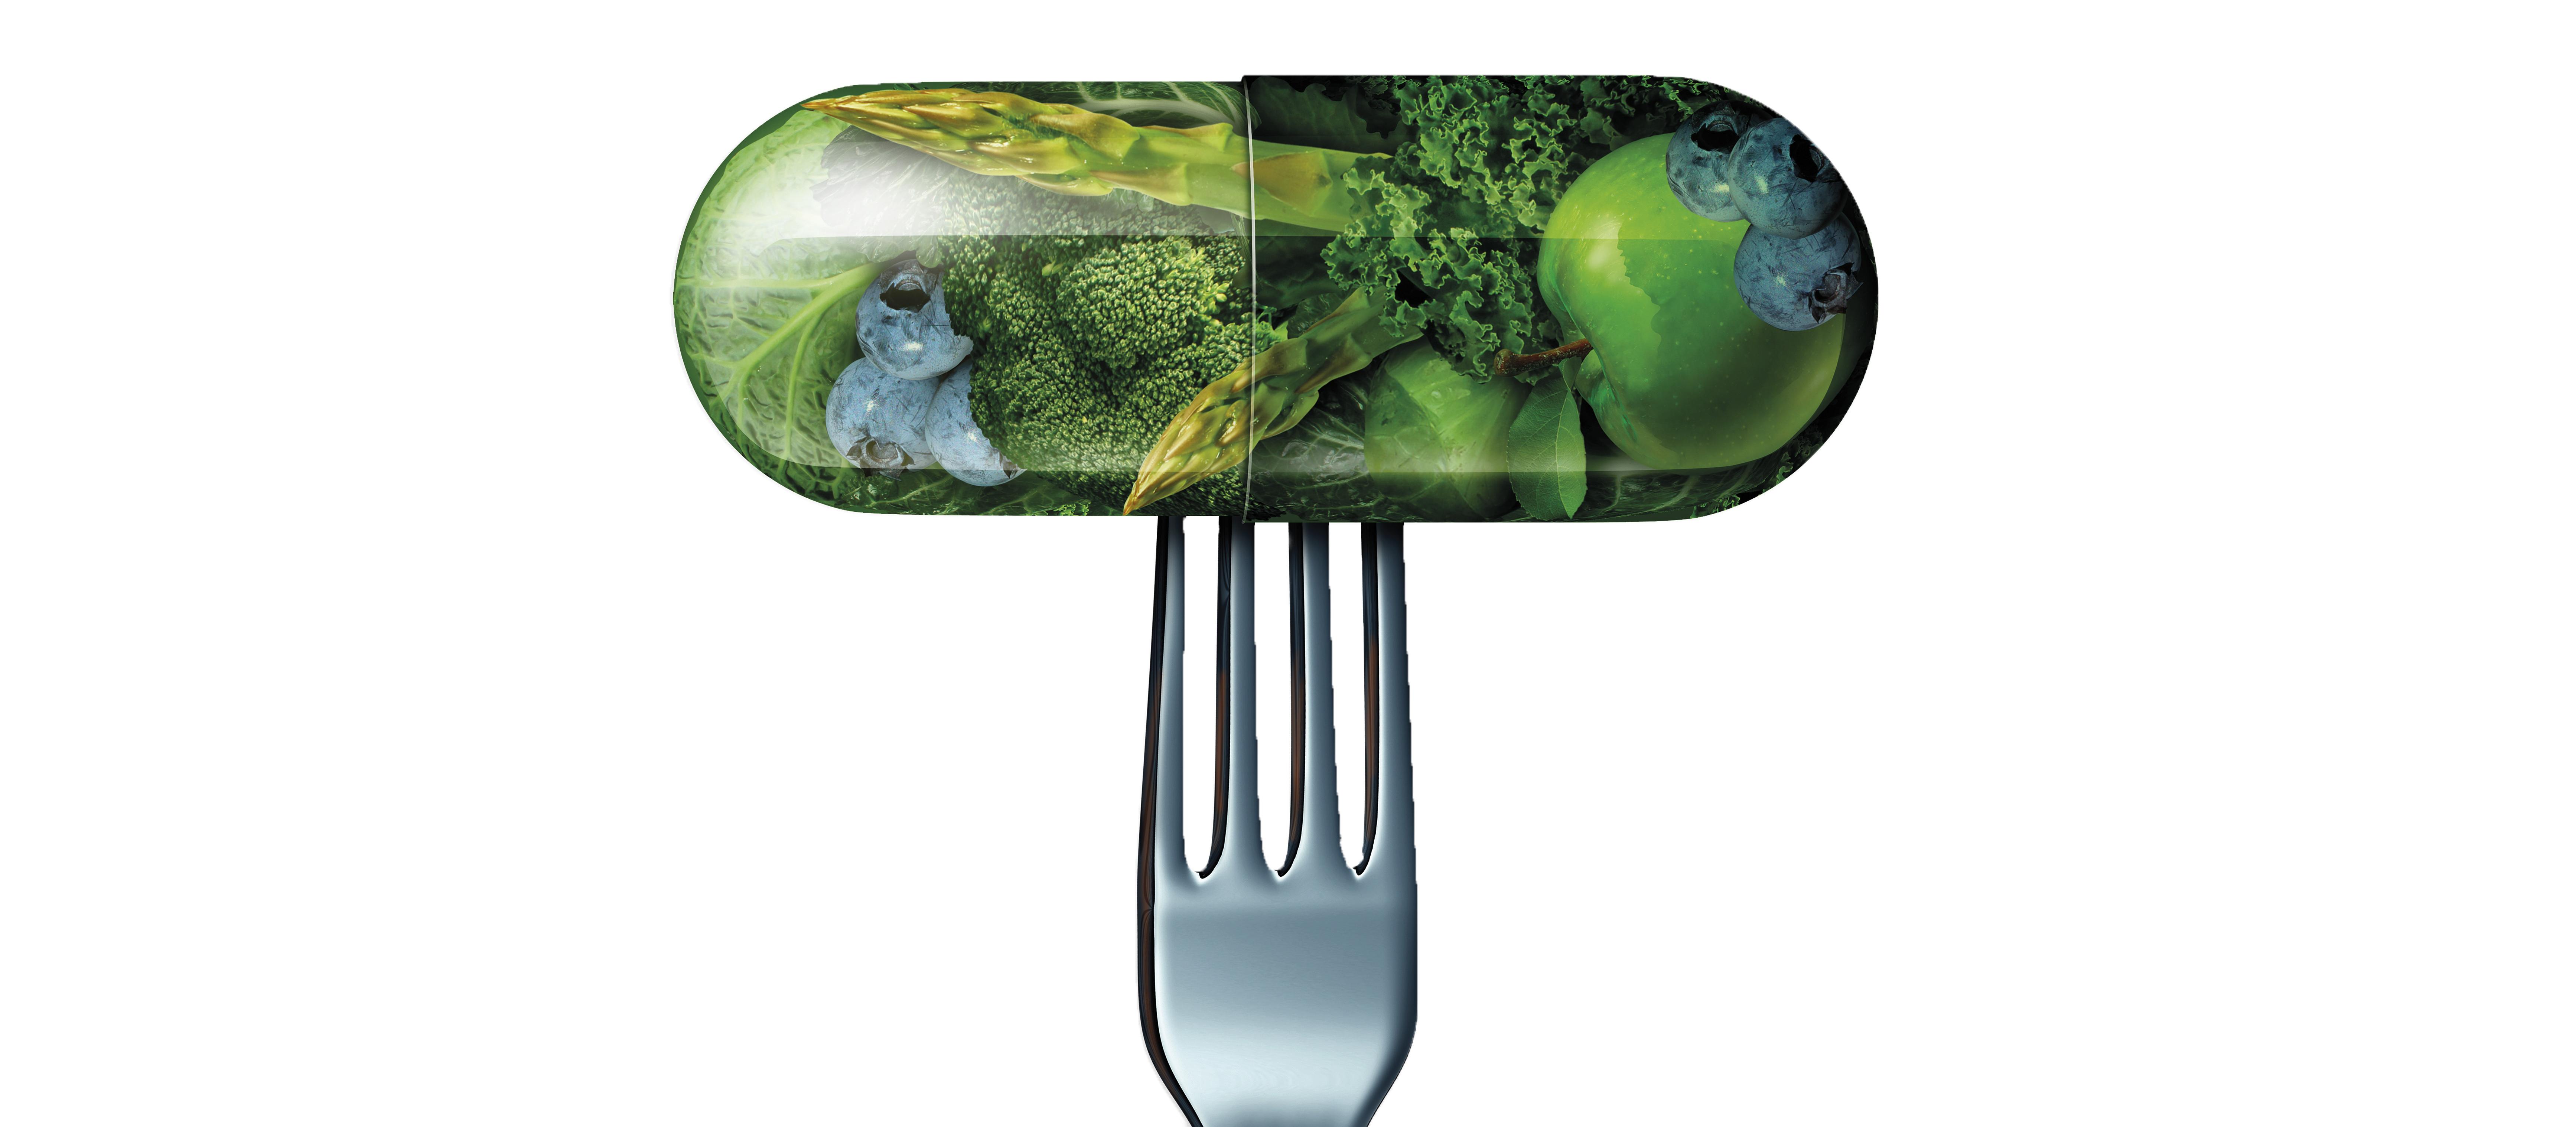 Natural medicine and fork